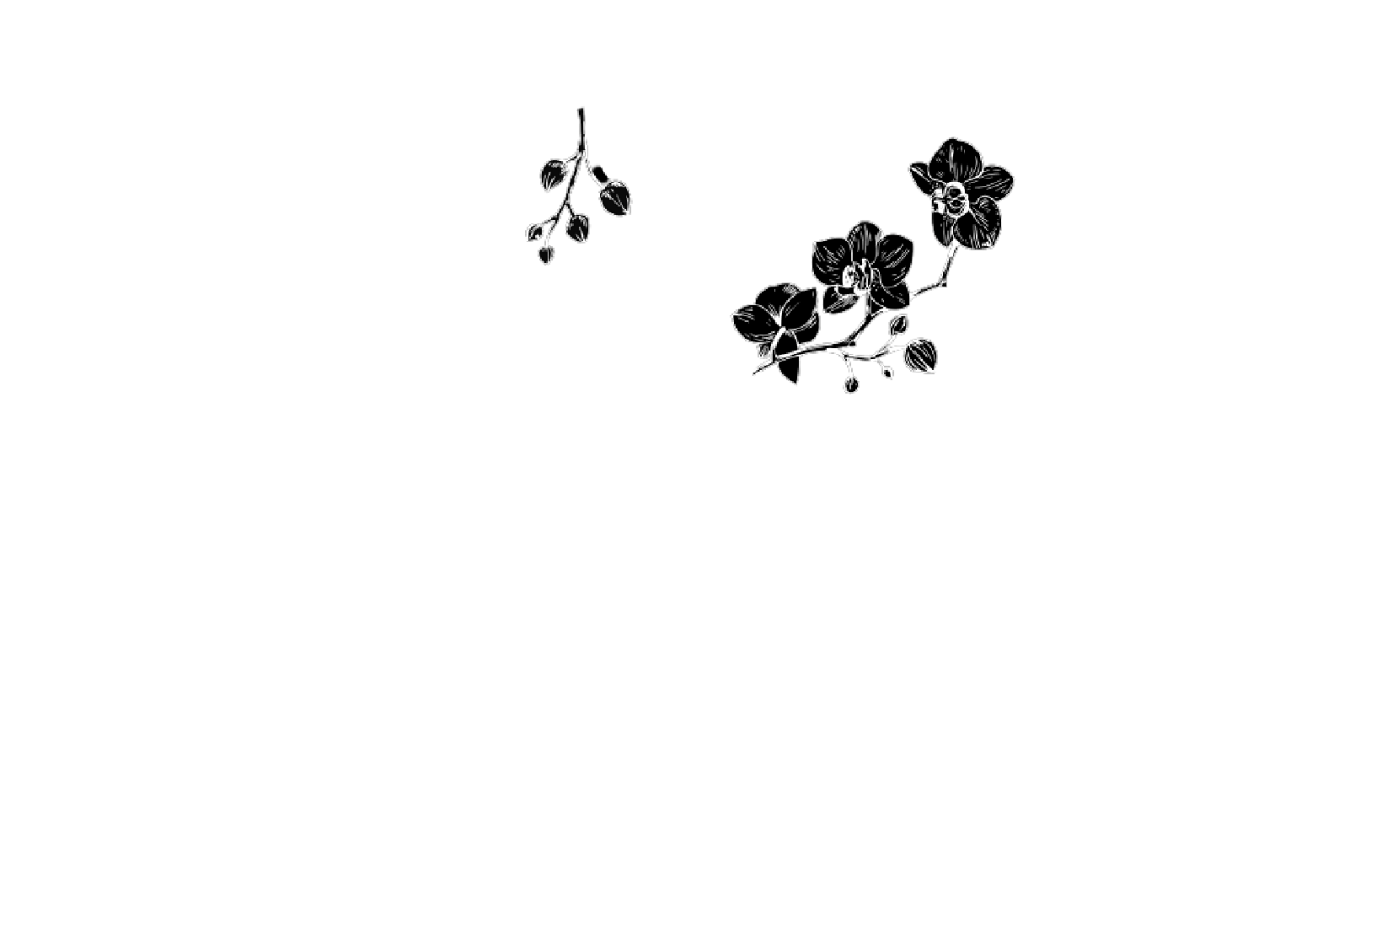 Gallery Bistro & Bar logo scroll